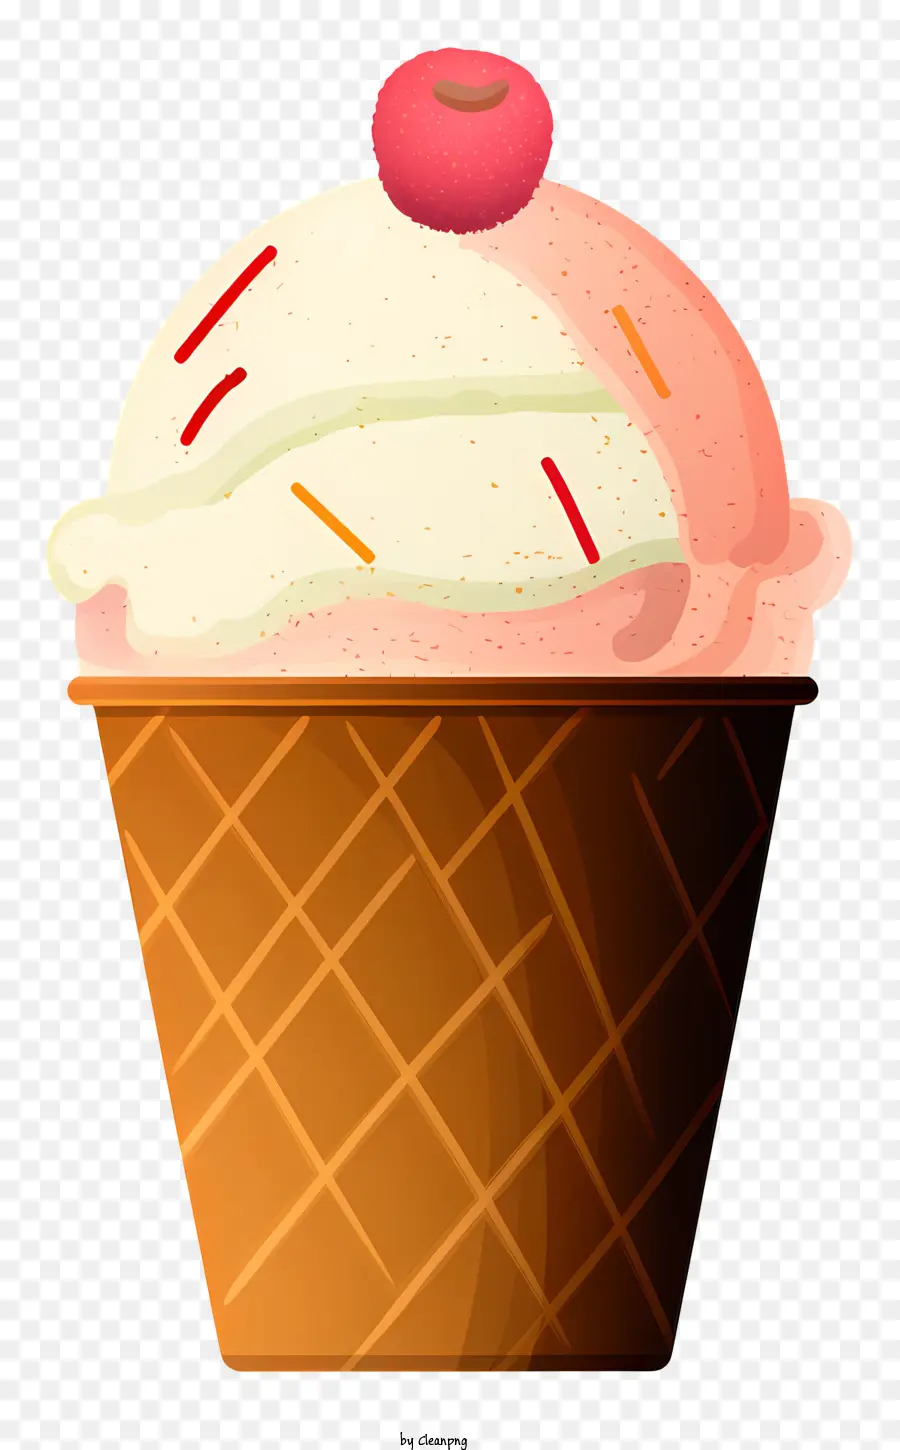 cioccolato con gelato al cioccolato cono montato a forma di culo in cima - Cono gelato rosa e bianco con ciliegia